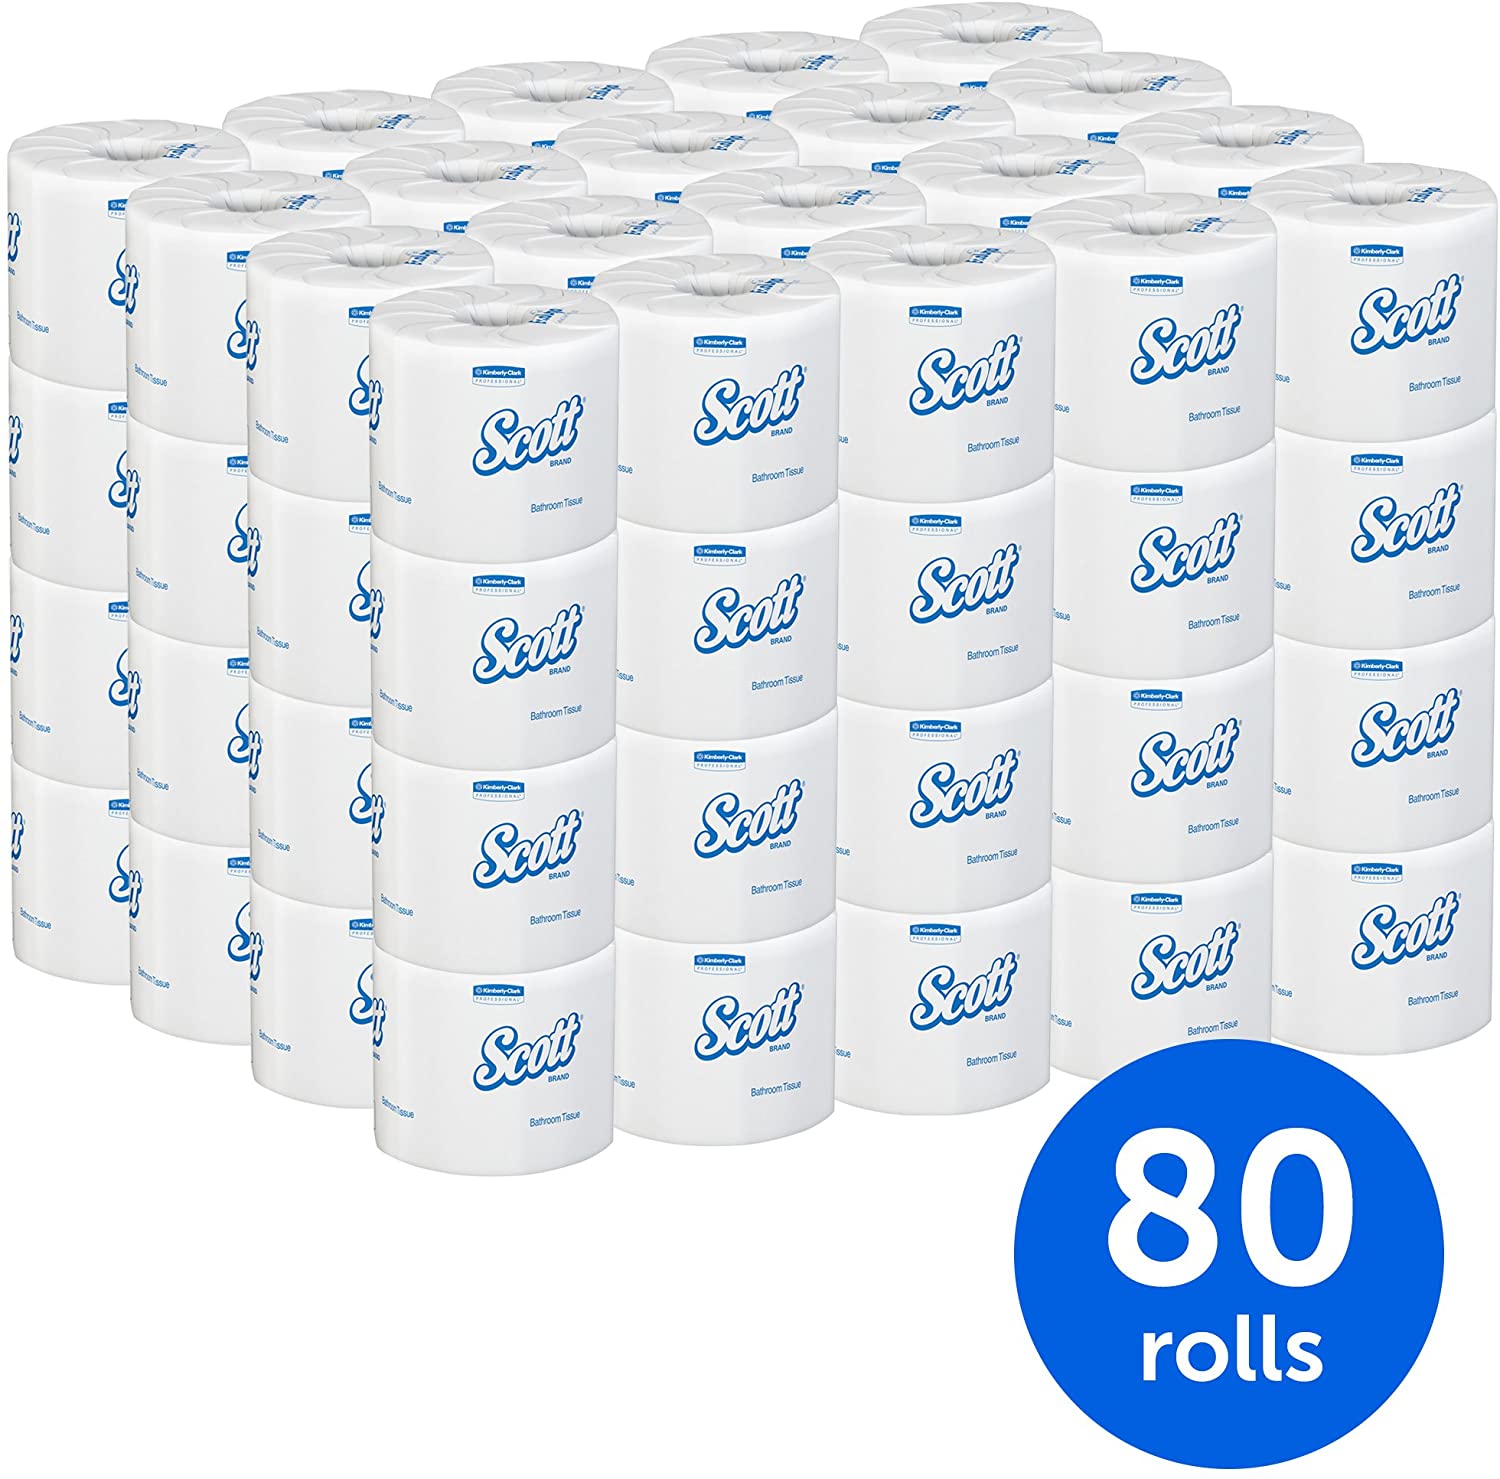 Cottonelle Professional Bulk Toilet Paper, Standard Toilet Paper Rolls